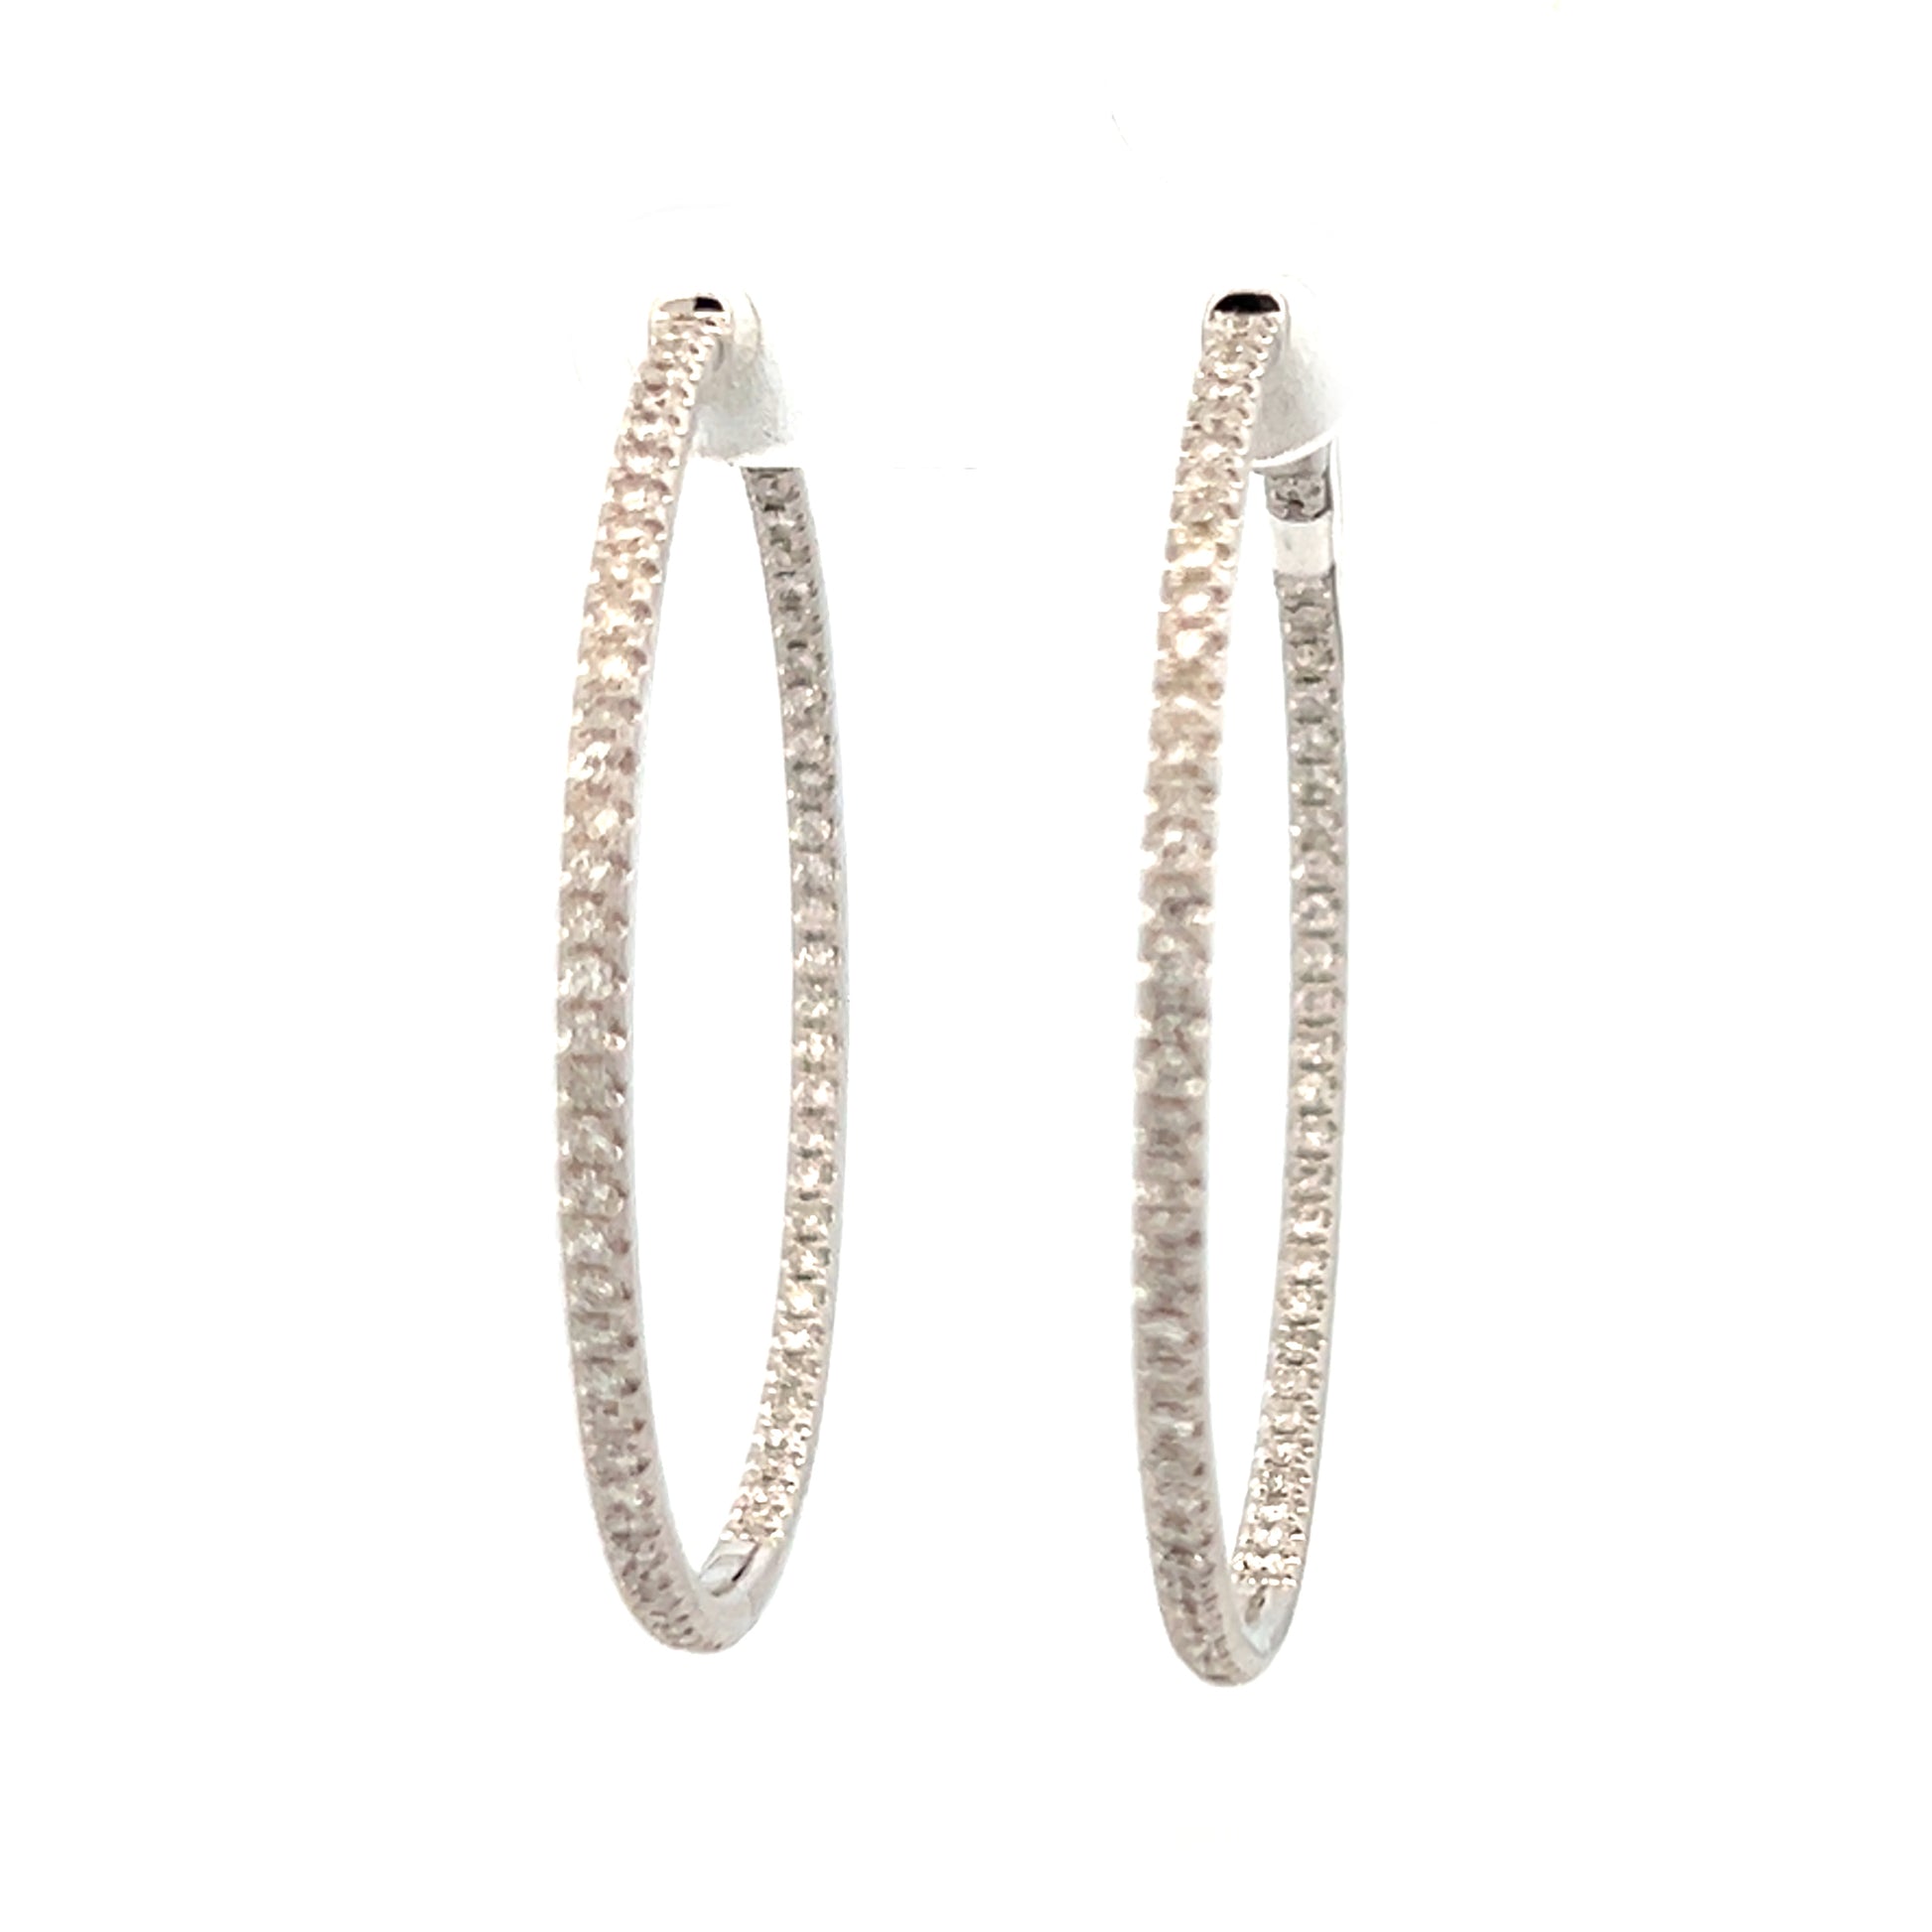 1.49cttw Gold Diamond Hoop Earrings | Hoop Earrings With Diamonds | 42mm Gold Hoop Earrings | Gold Hoop Earrings With Diamonds | Diamond Earrings Houston